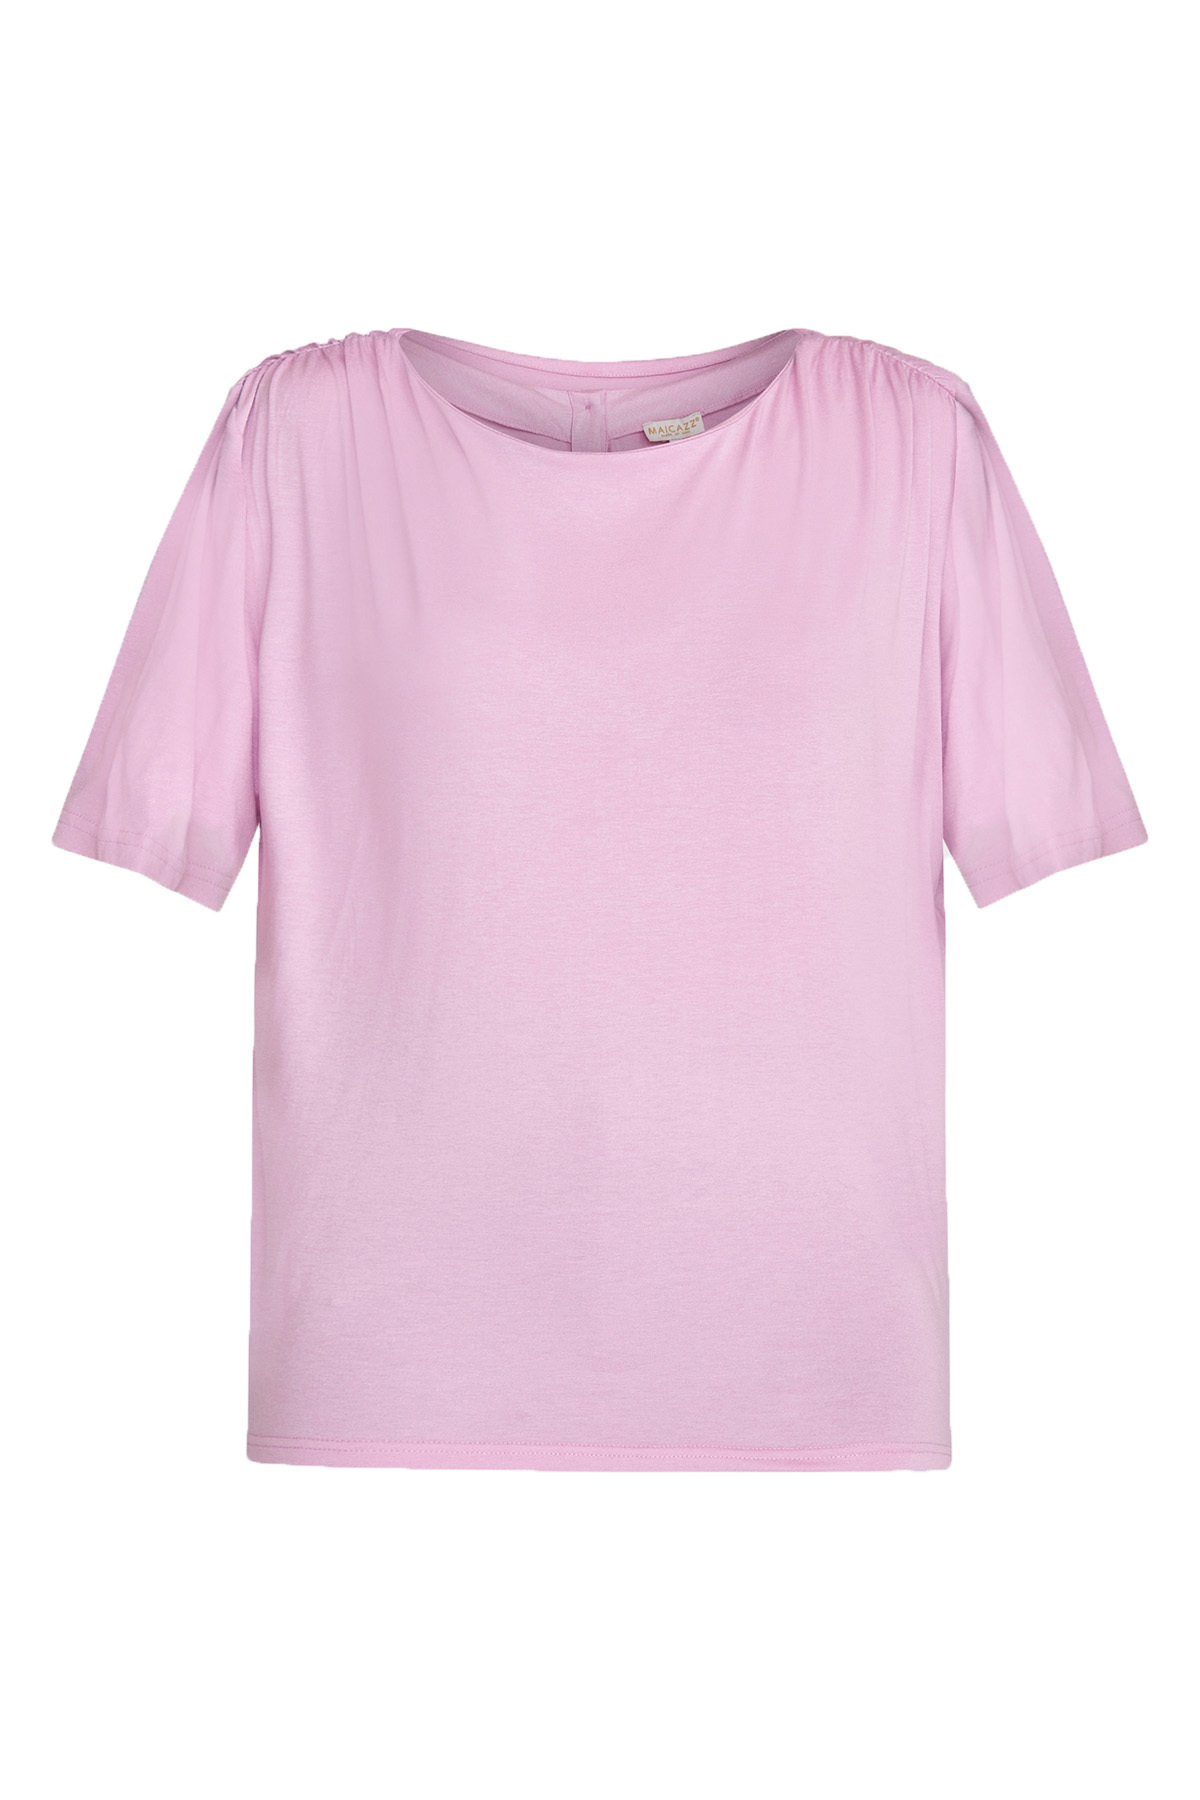 MAICAZZ T-Shirt Jeron Mauve Roze